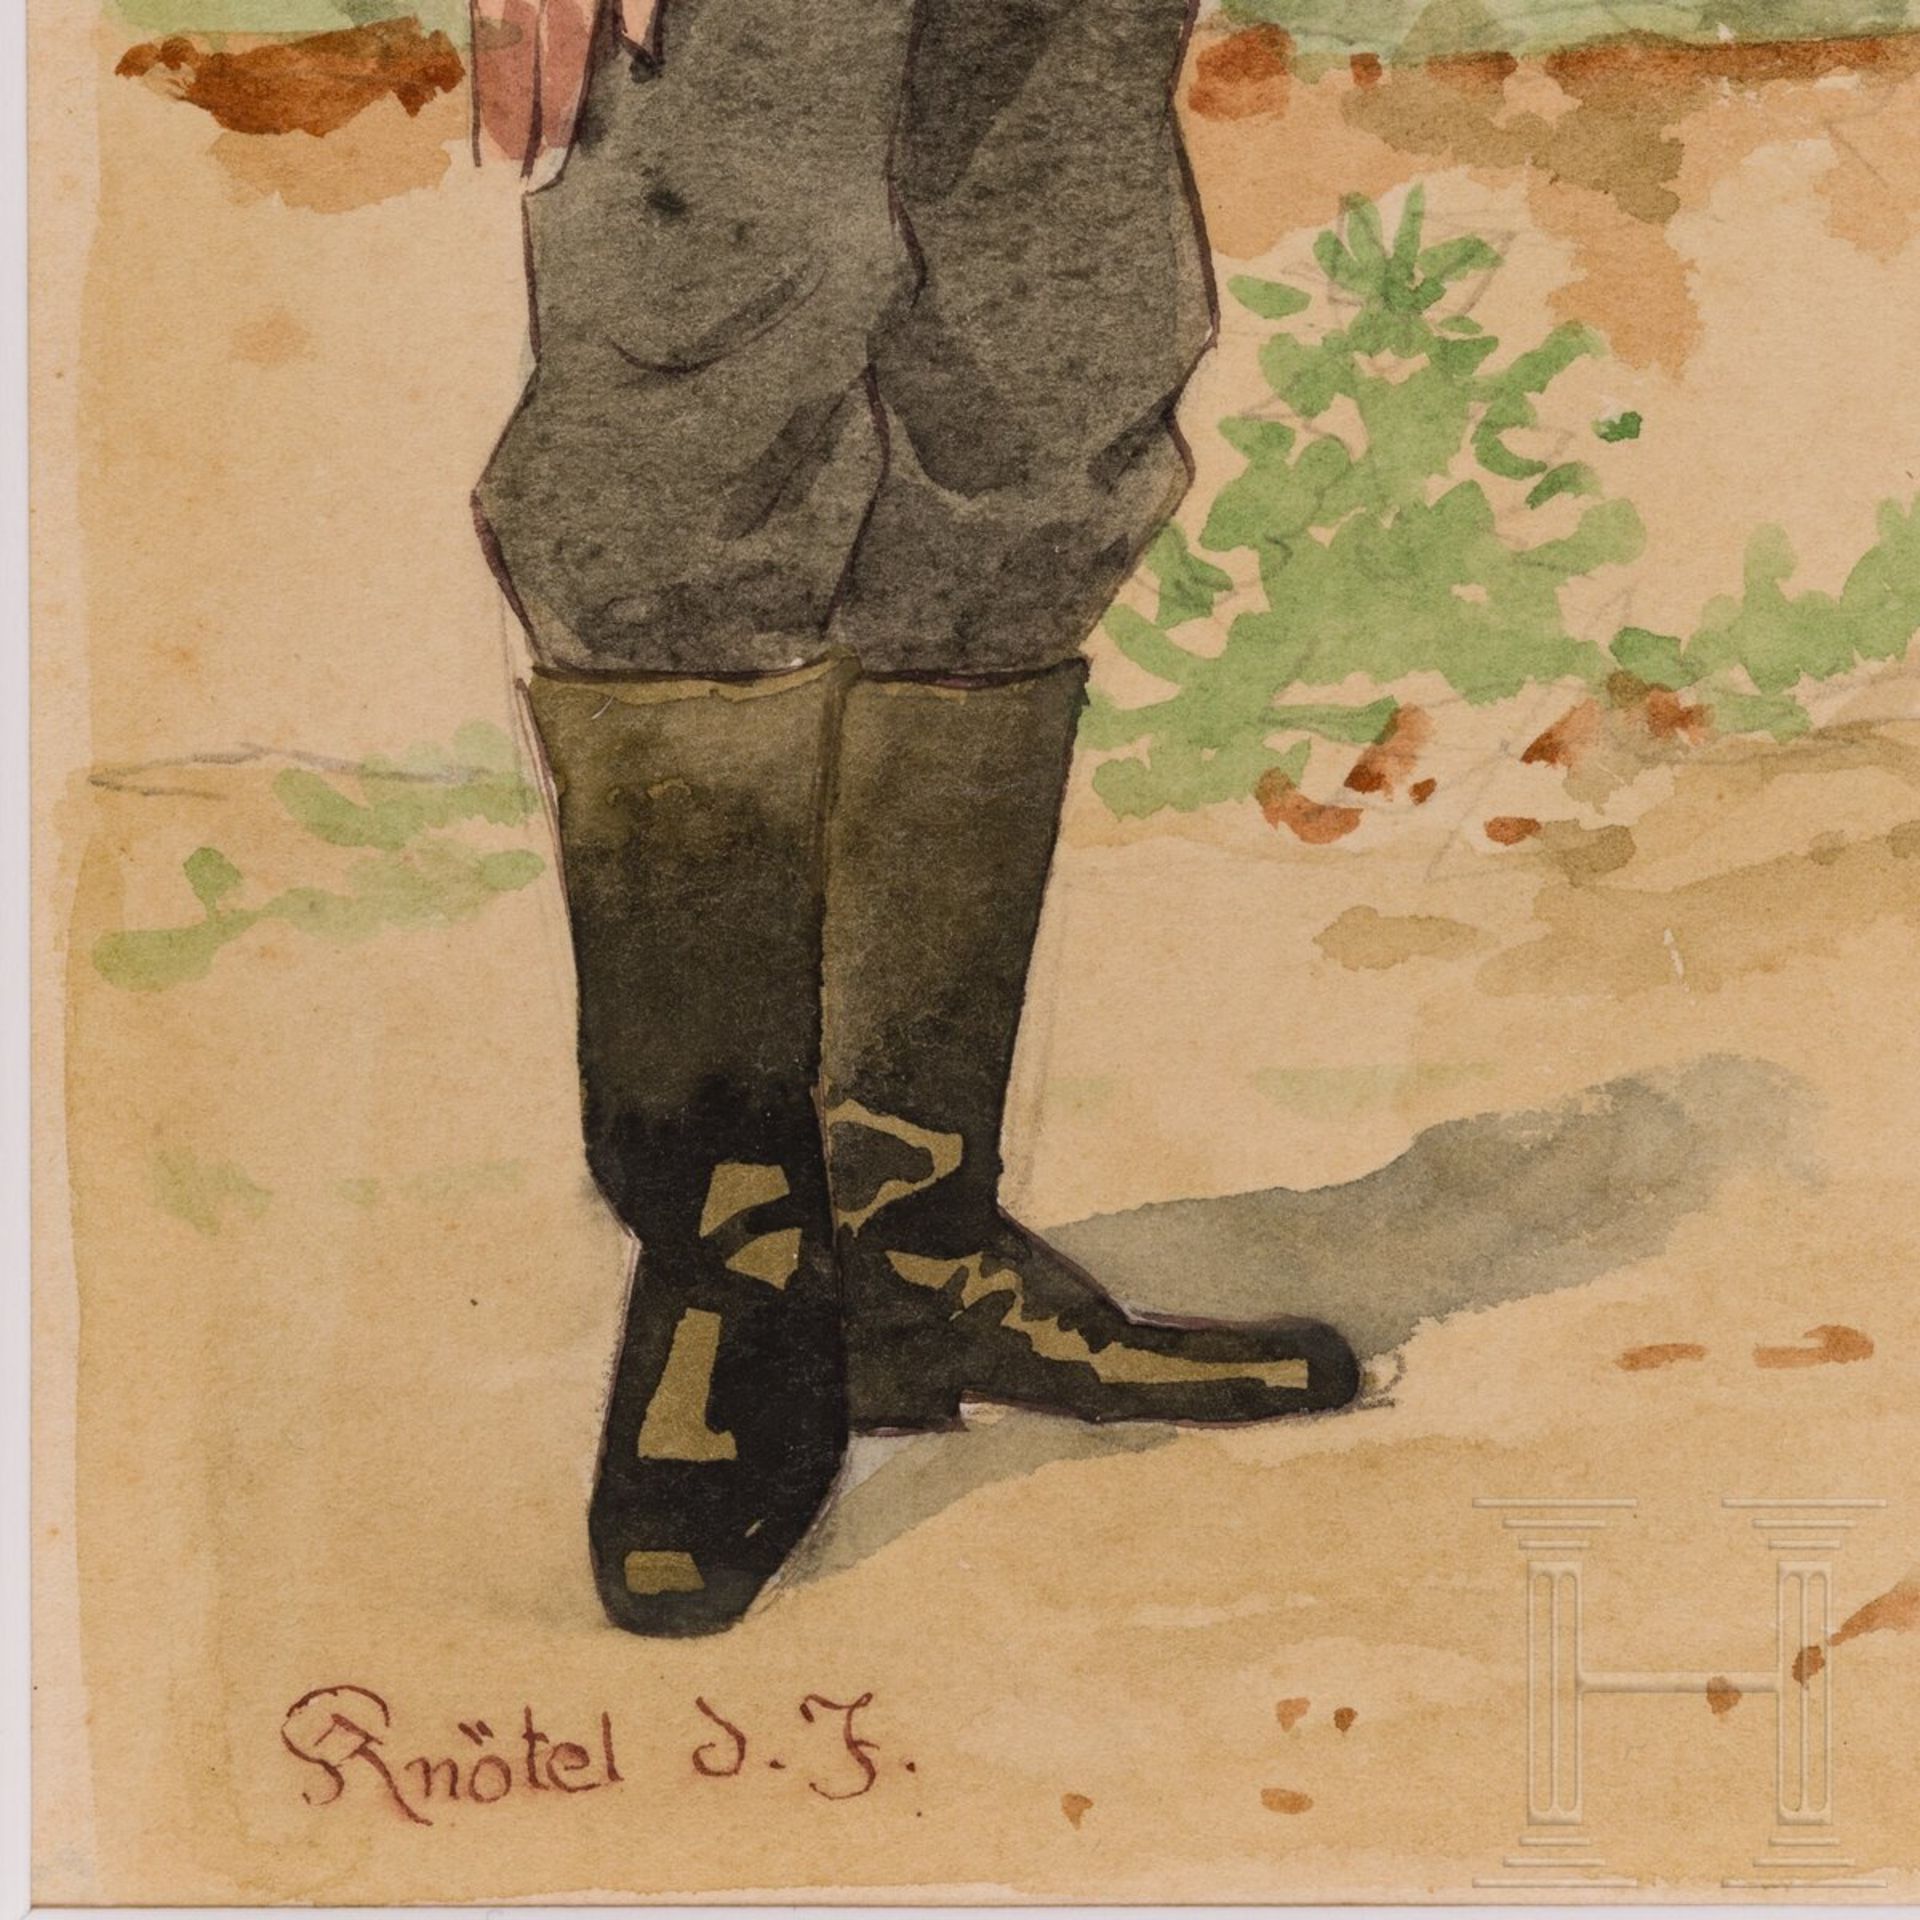 Herbert Knötel - Uniformtafel der Reichswehr - Image 3 of 3